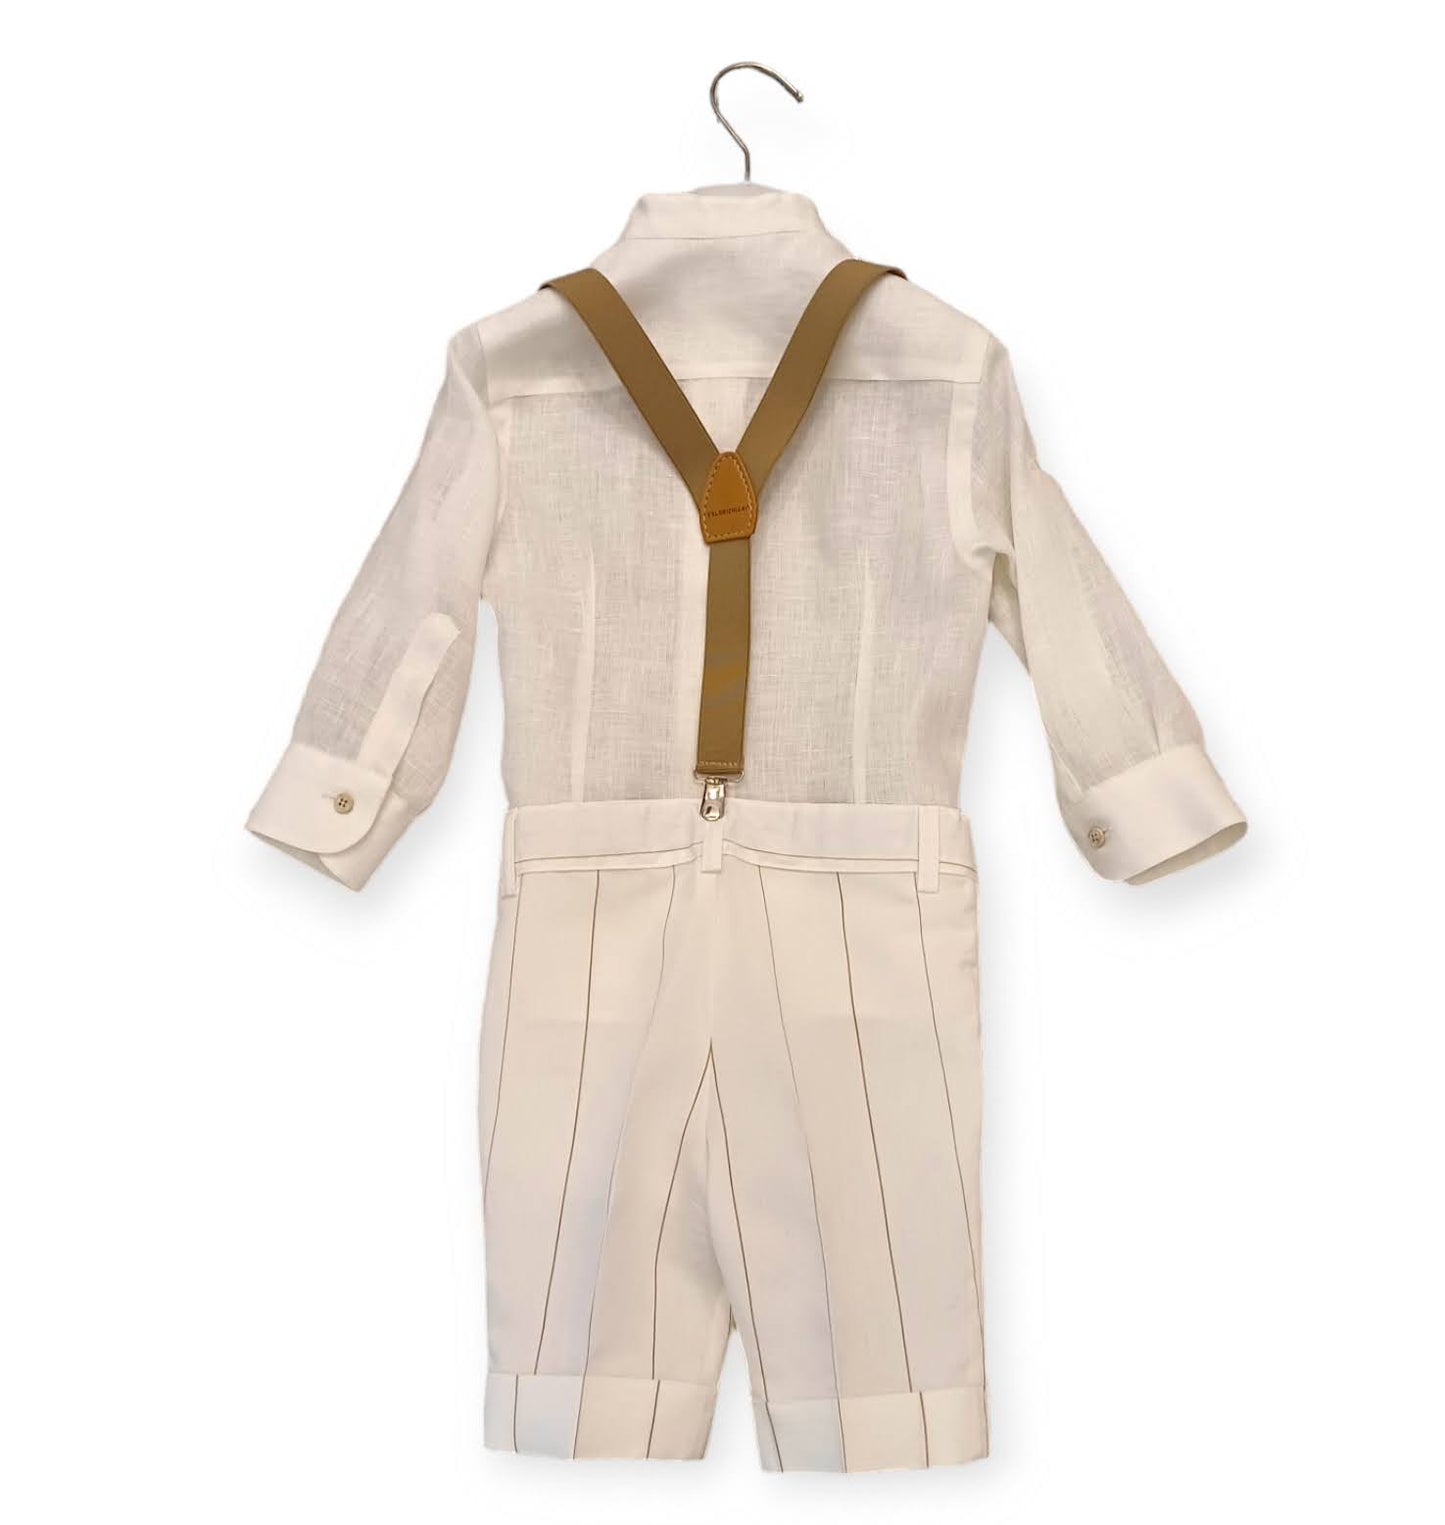 COLORICHIARI 3-piece suit with linen shirt-Bermuda shorts-braces